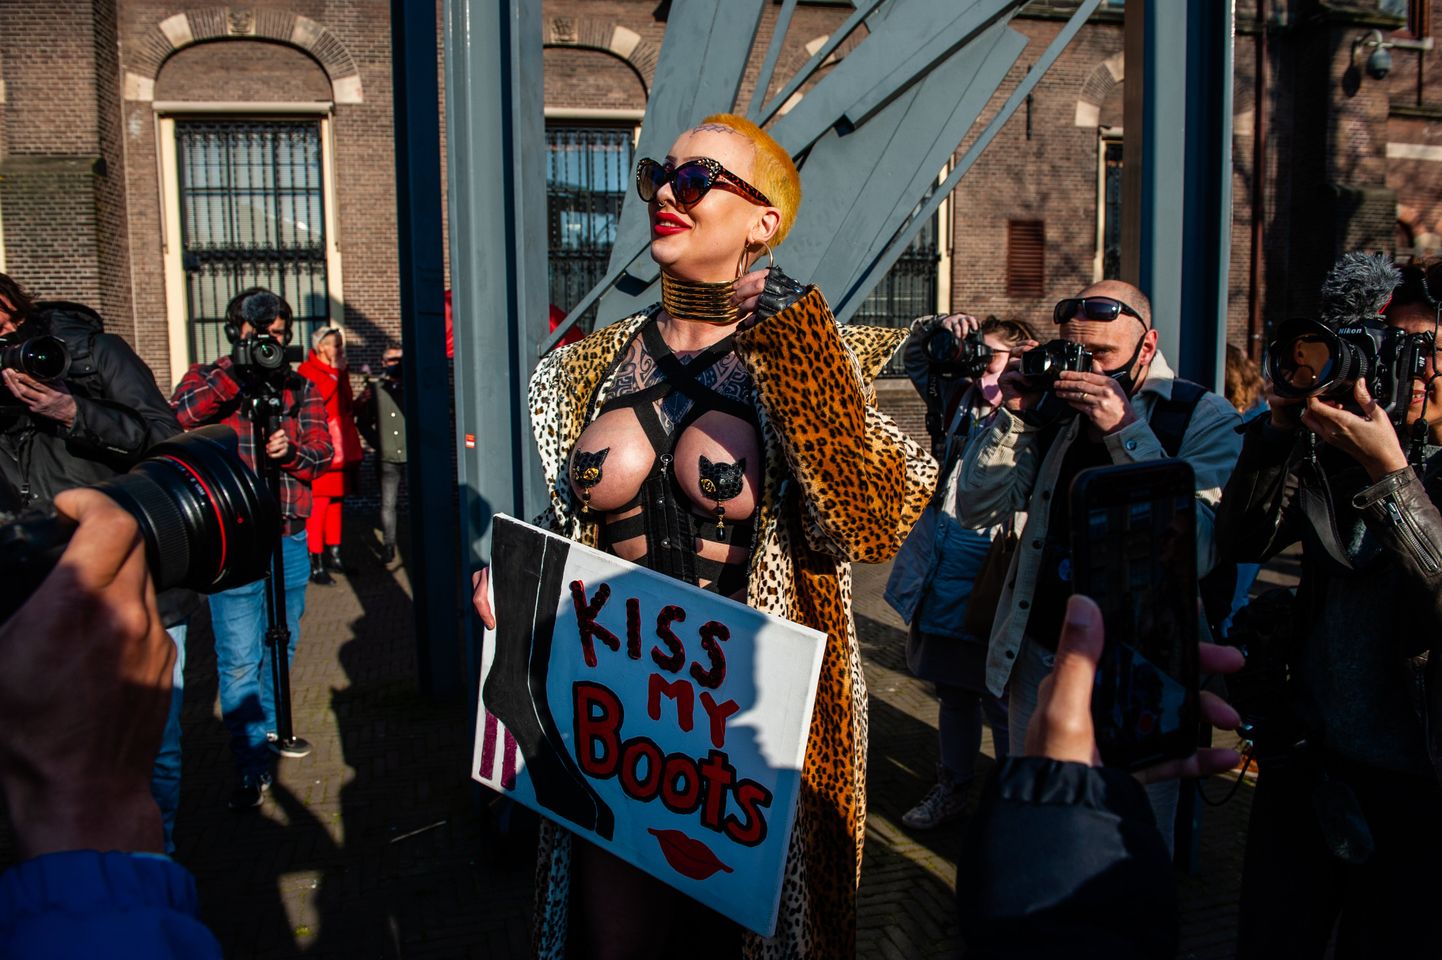 Hollandi seksitöötaja The Hague linnas 2. märtsil protestimas.